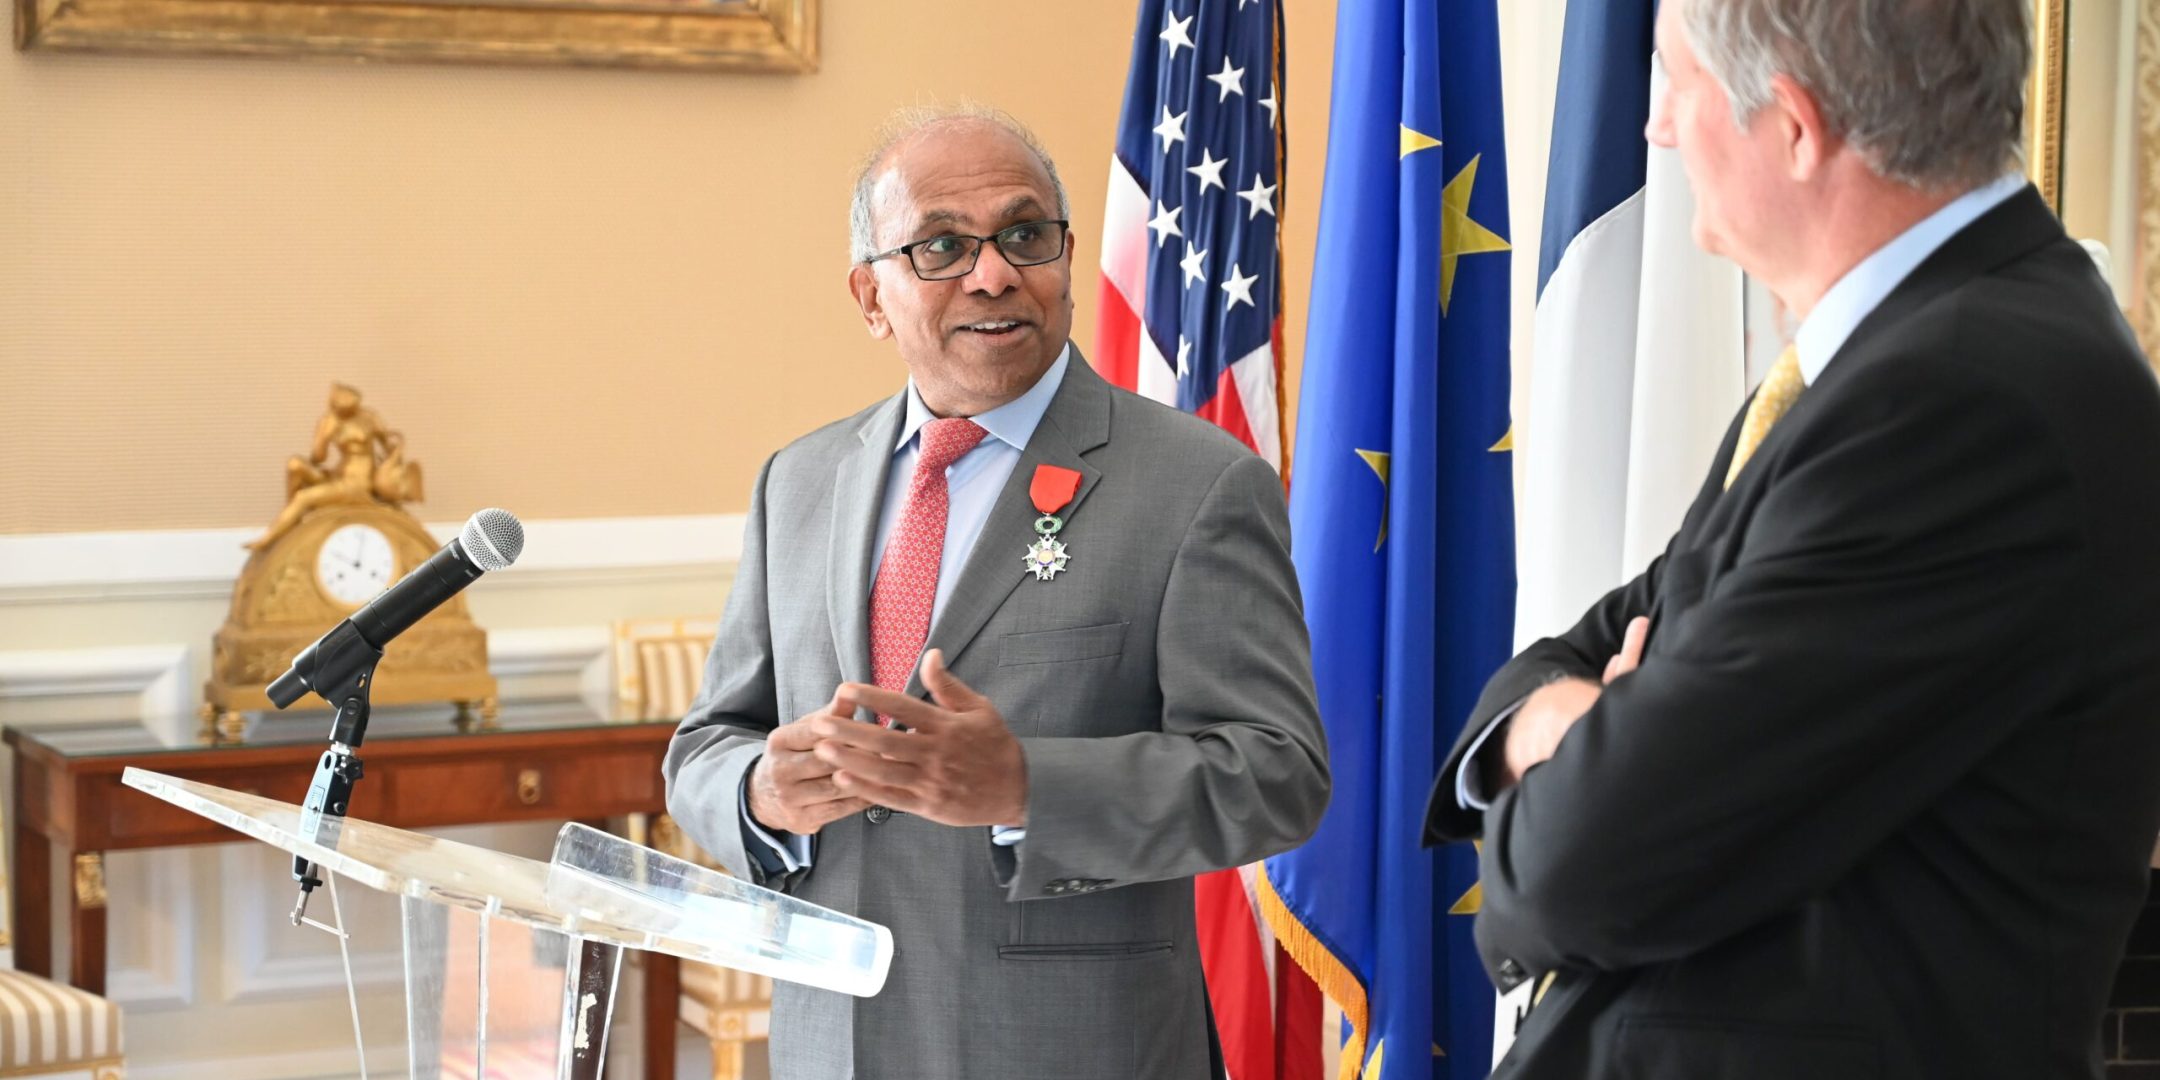 Discours du Dr Subra Suresh lors de sa remise de Légion d’Honneur en présence de Laurent Bili, Ambassadeur de France aux Etats-Unis

(crédit photo : French Embassy in the U.S.)